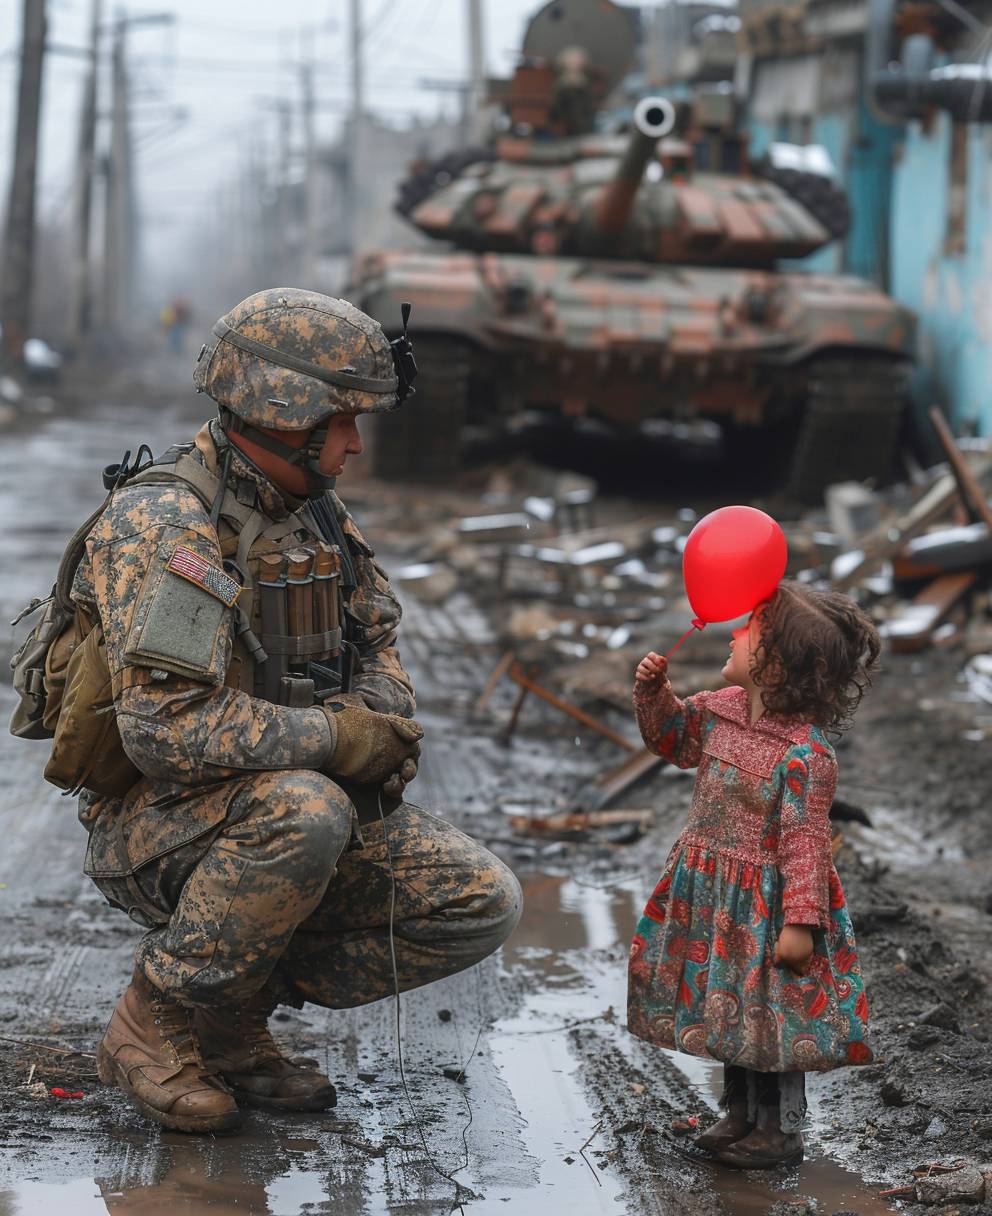 イギリスの兵士がひざまずき、小さな女の子に赤い風船を贈る様子があり、背景にはウクライナの壊滅的な都市が見える。 ウクライナ国旗が建物の横でバラバラになっている。 放棄された戦車を含む戦区がある